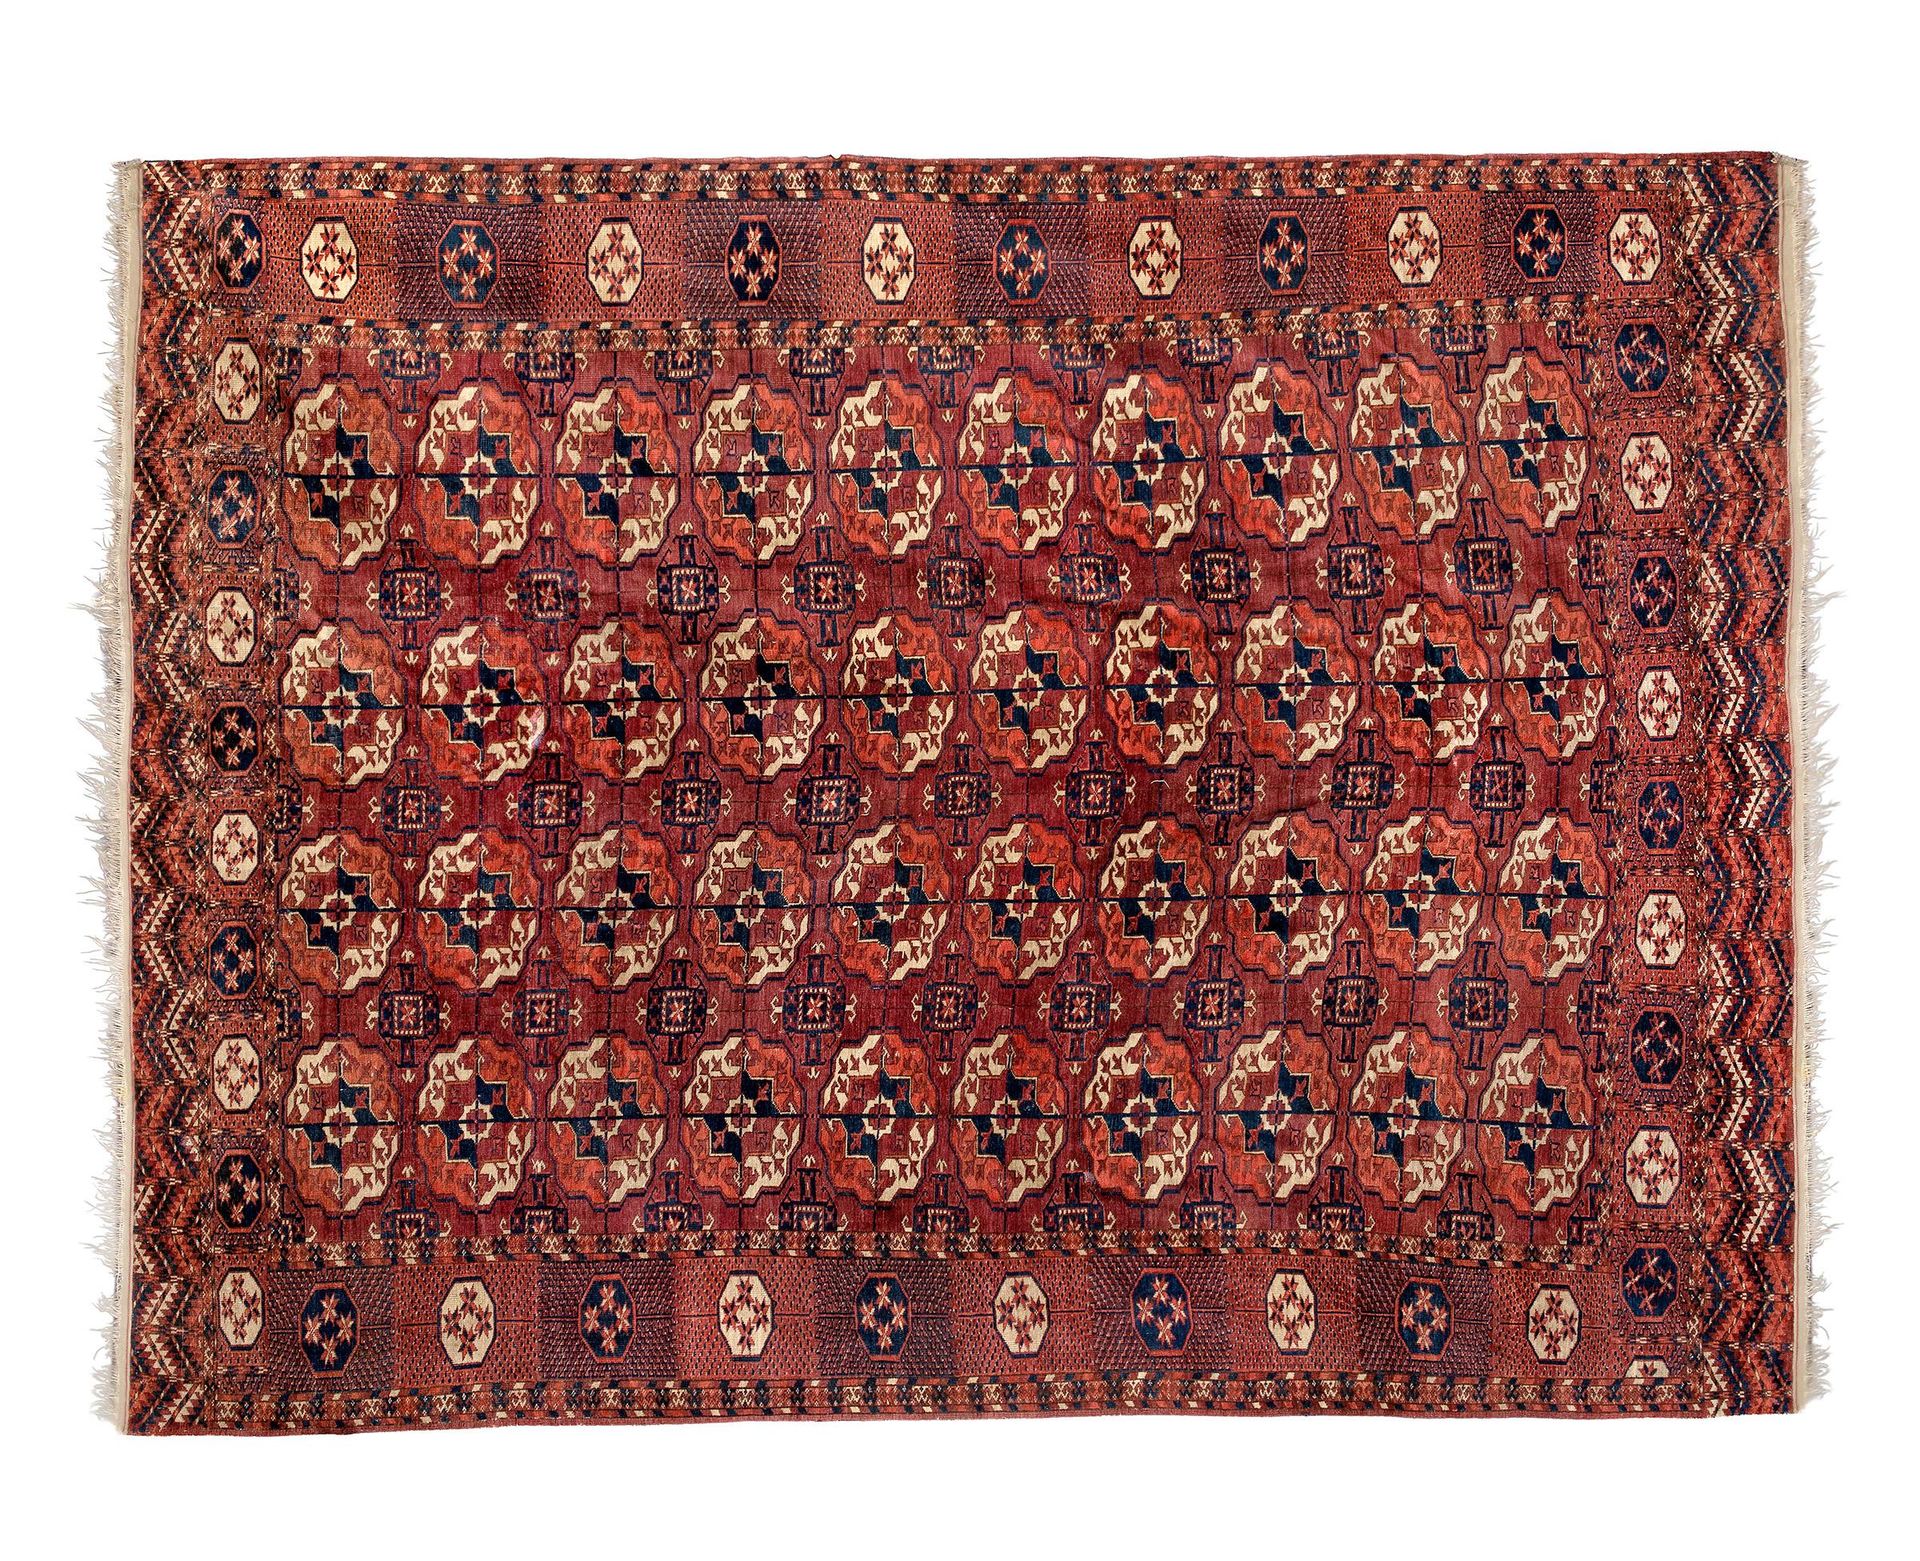 Null Antiker türkischer Teppich, 19. Jahrhundert.
In Wolle geknüpft. 500.000 Kno&hellip;